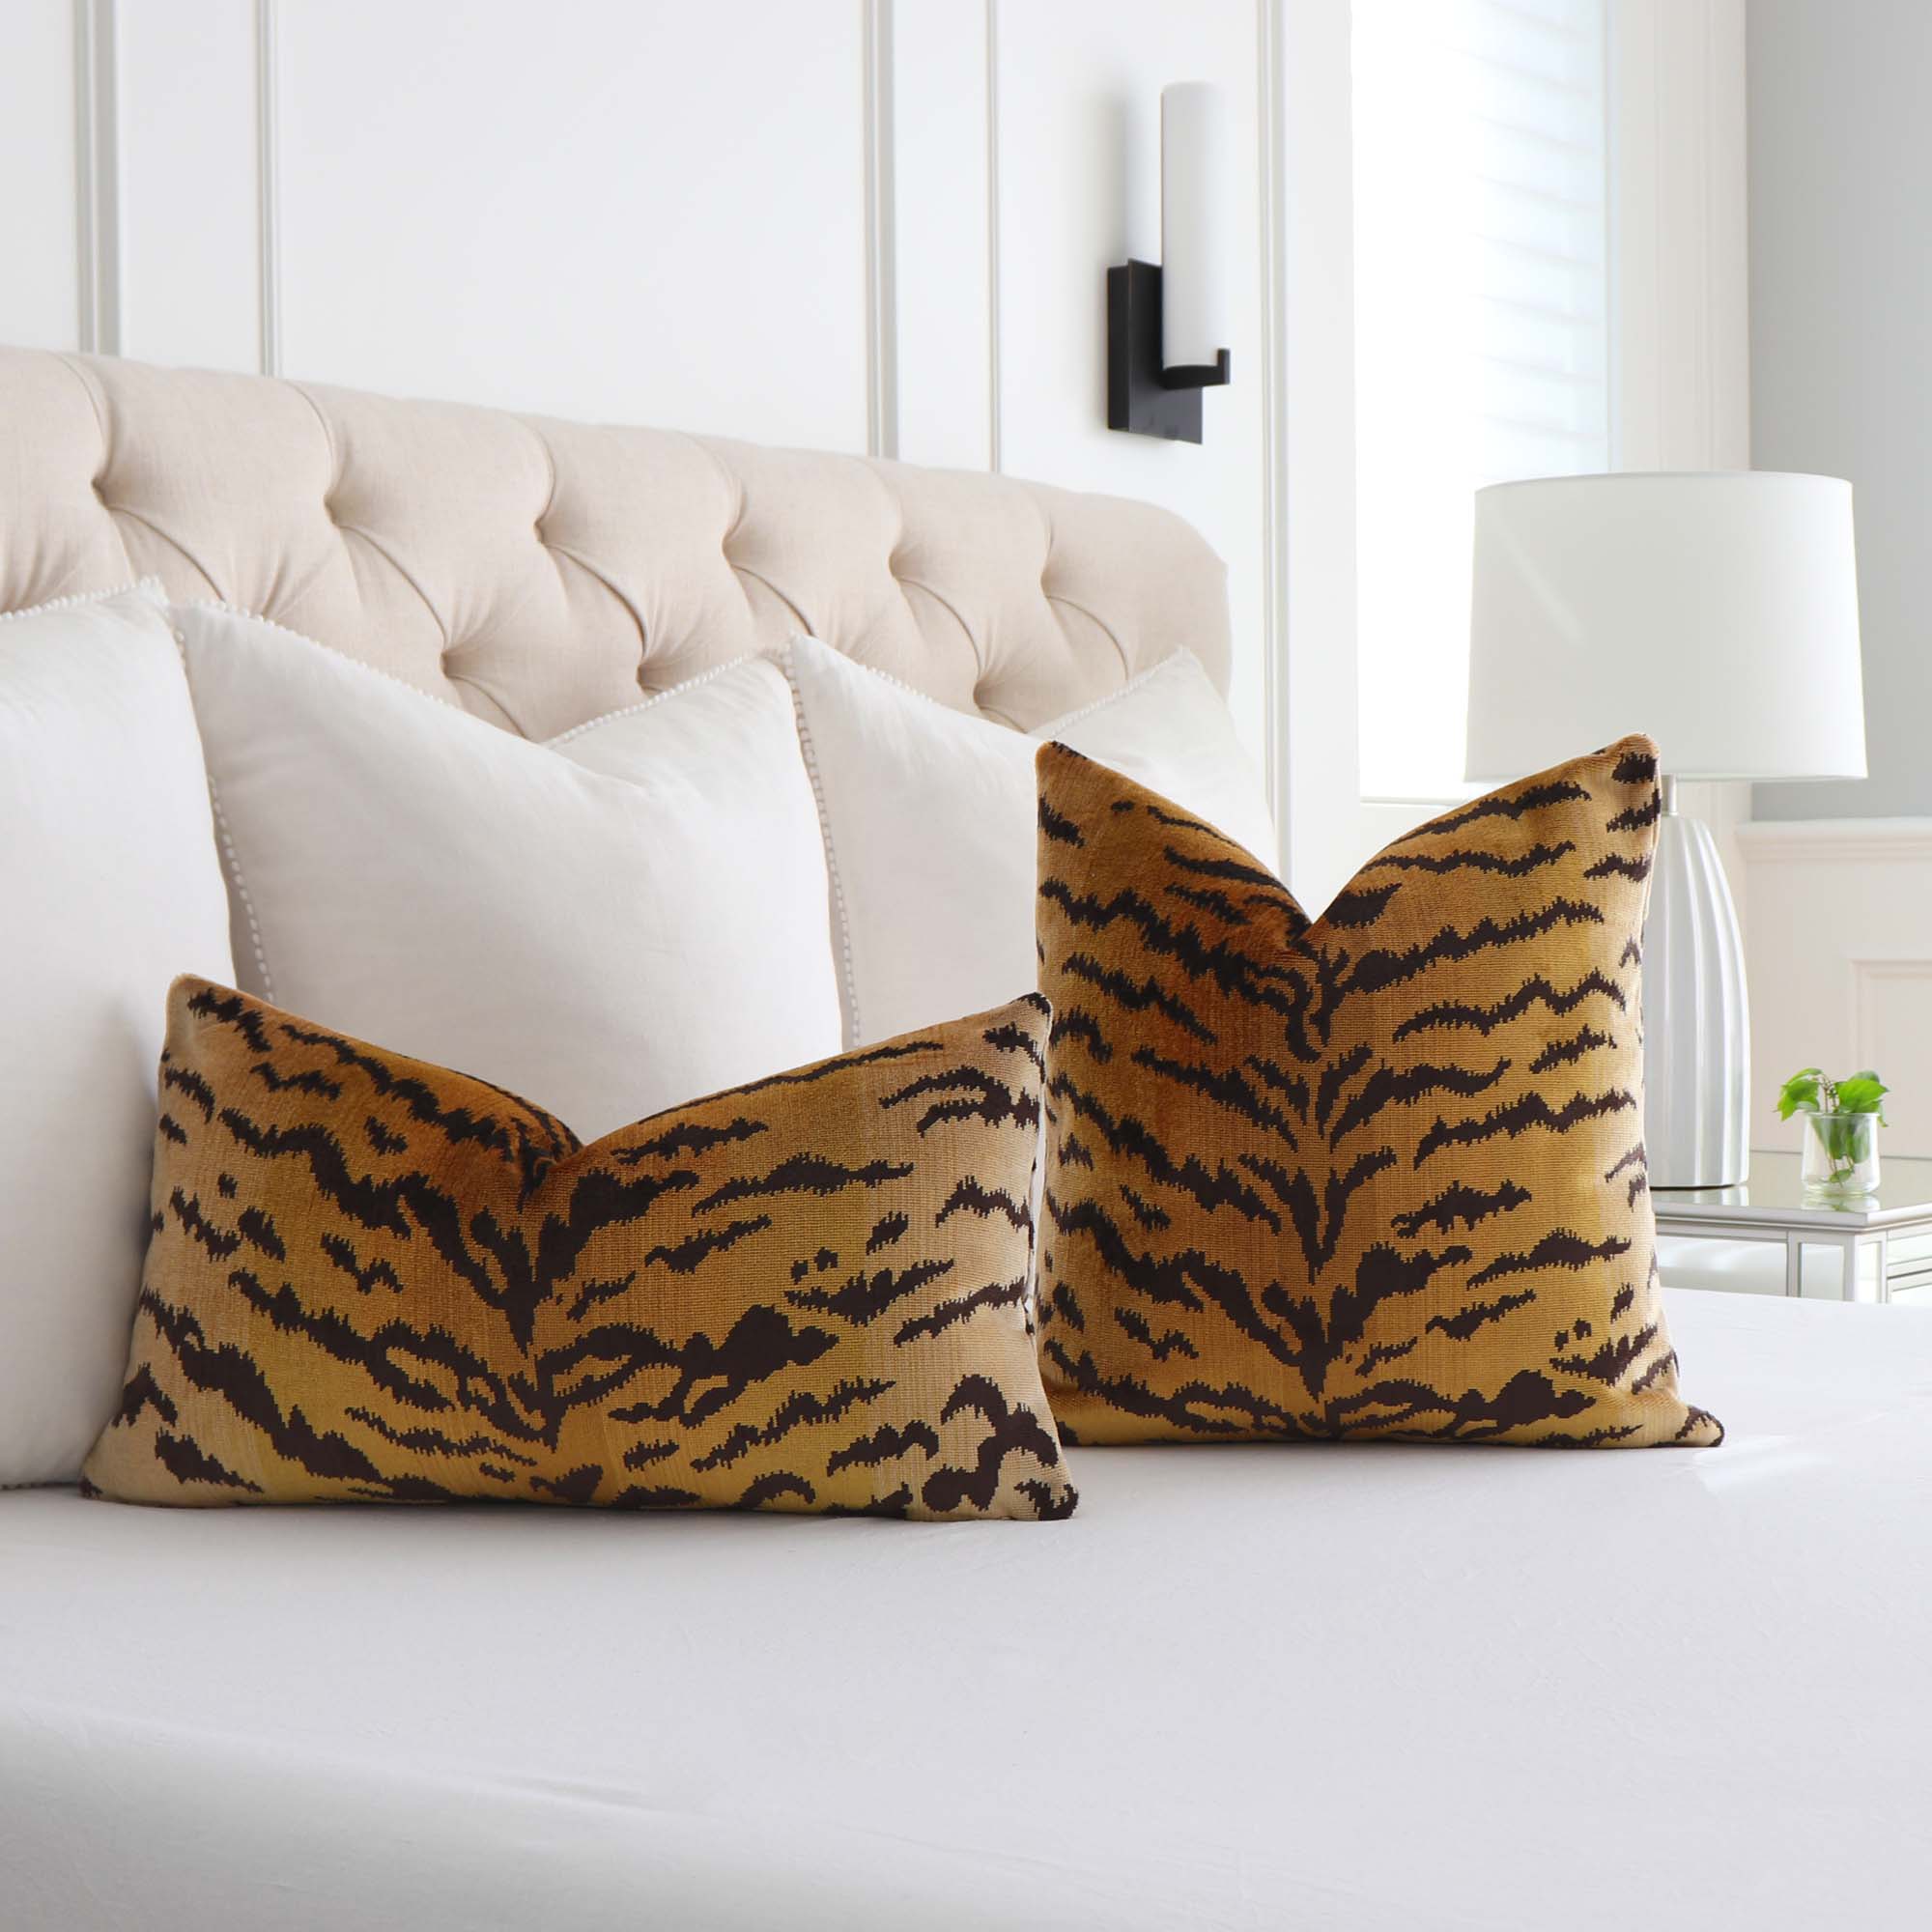 Luxury Lumbar Pillows